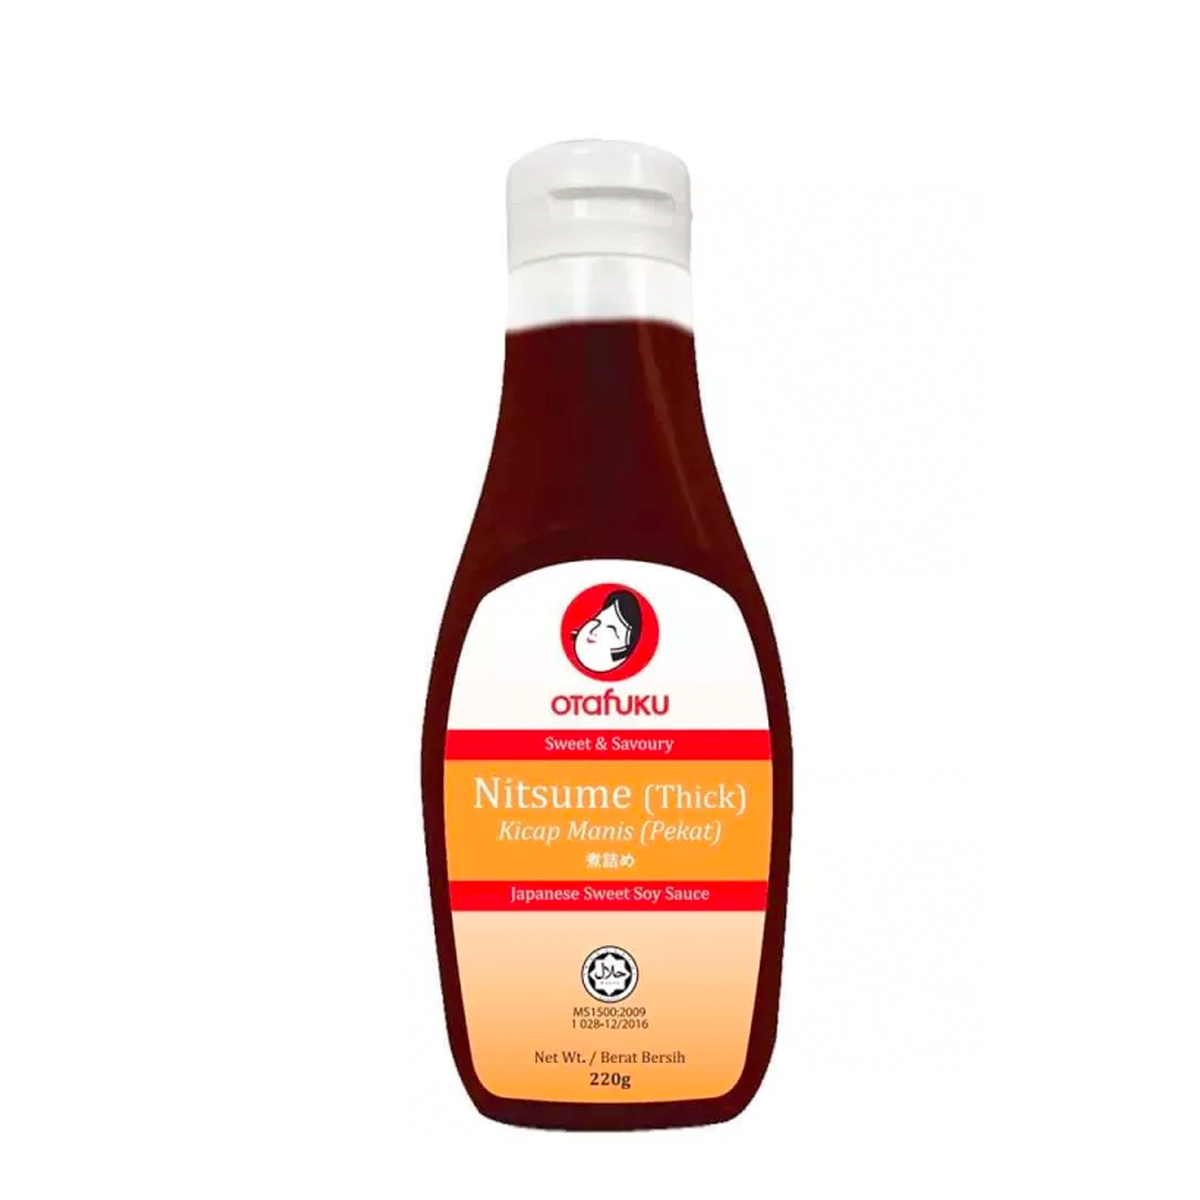 Buy Otafuku Nitsume Sauce 220 g Online at Best Price | Cooking Sauce | Lulu Kuwait in Kuwait